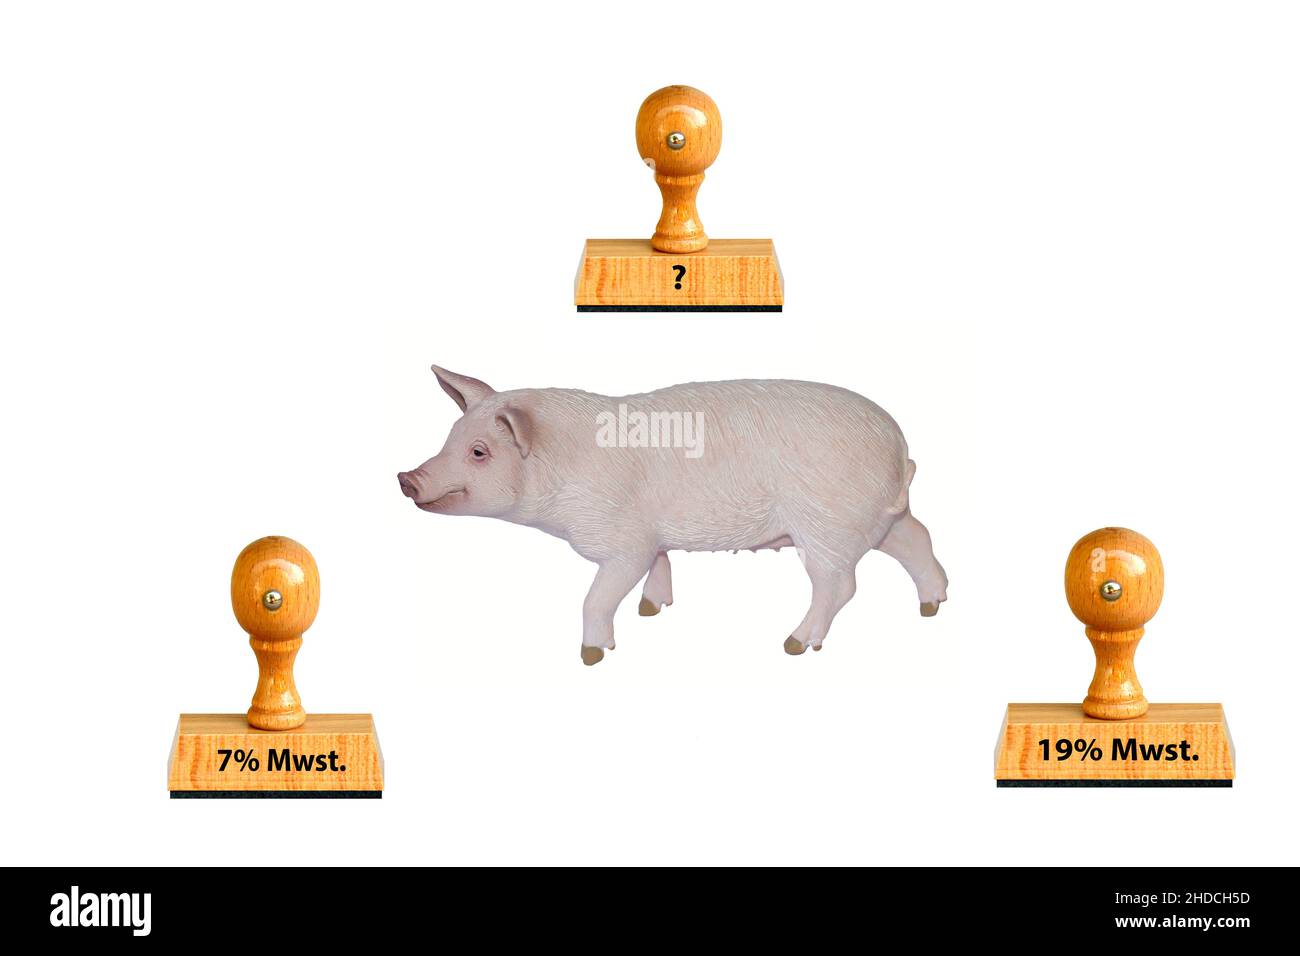 Schwein, Hausschwein, Freisteller, weisser Hintergrund, Erhoehung der Mehrwertsteuer auf Fleischprodukte um 19%. Stock Photo